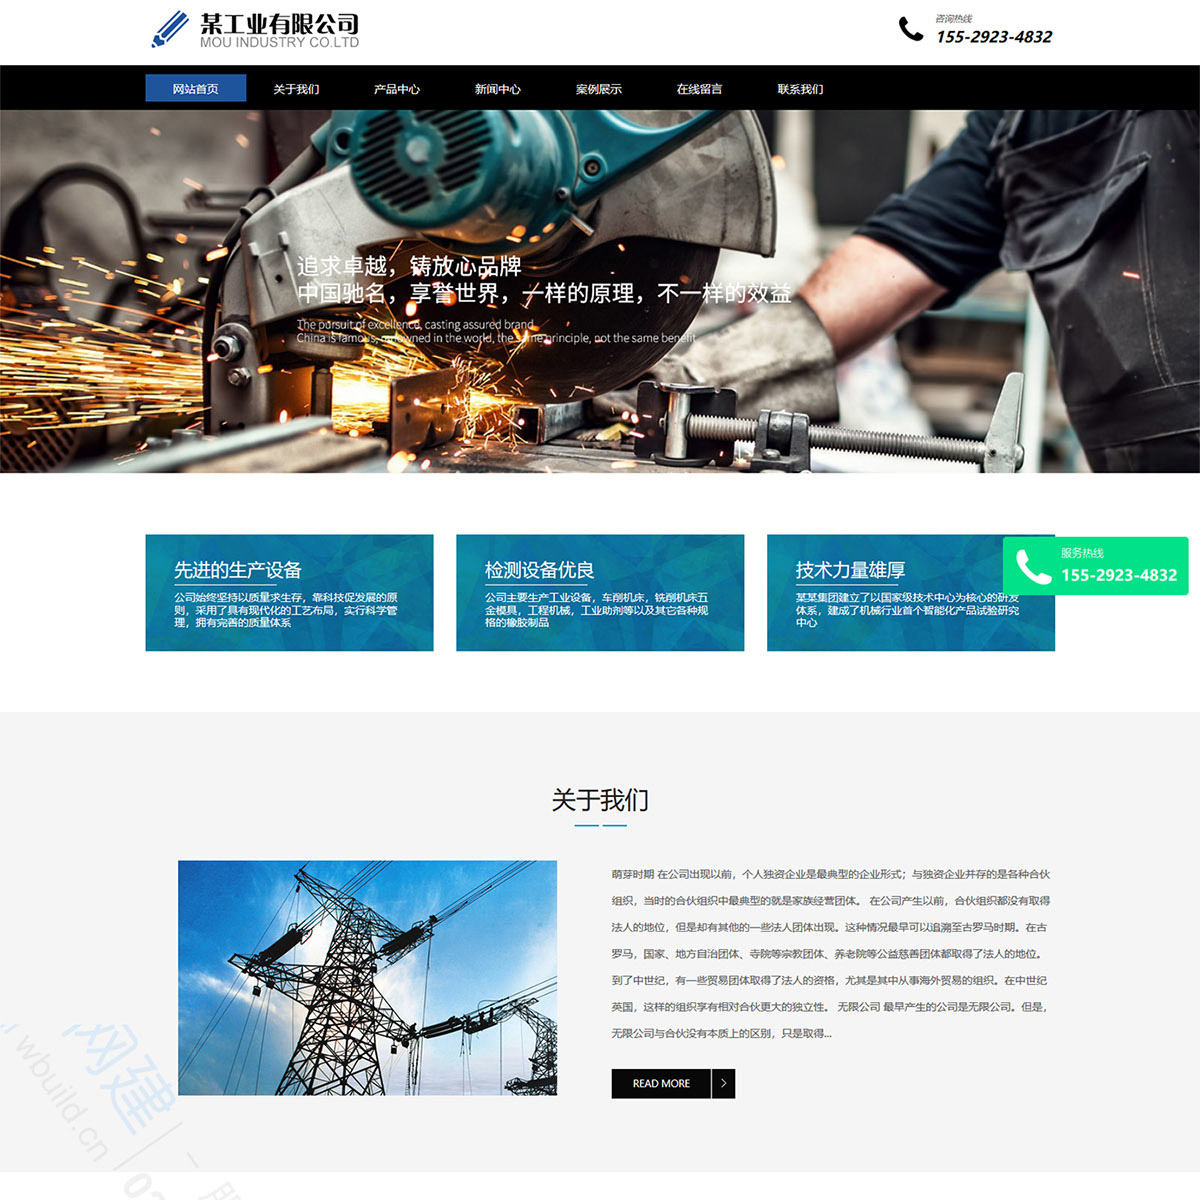 机械铸造工业设备制造类响应式企业网站制作模板(自适应手机端)